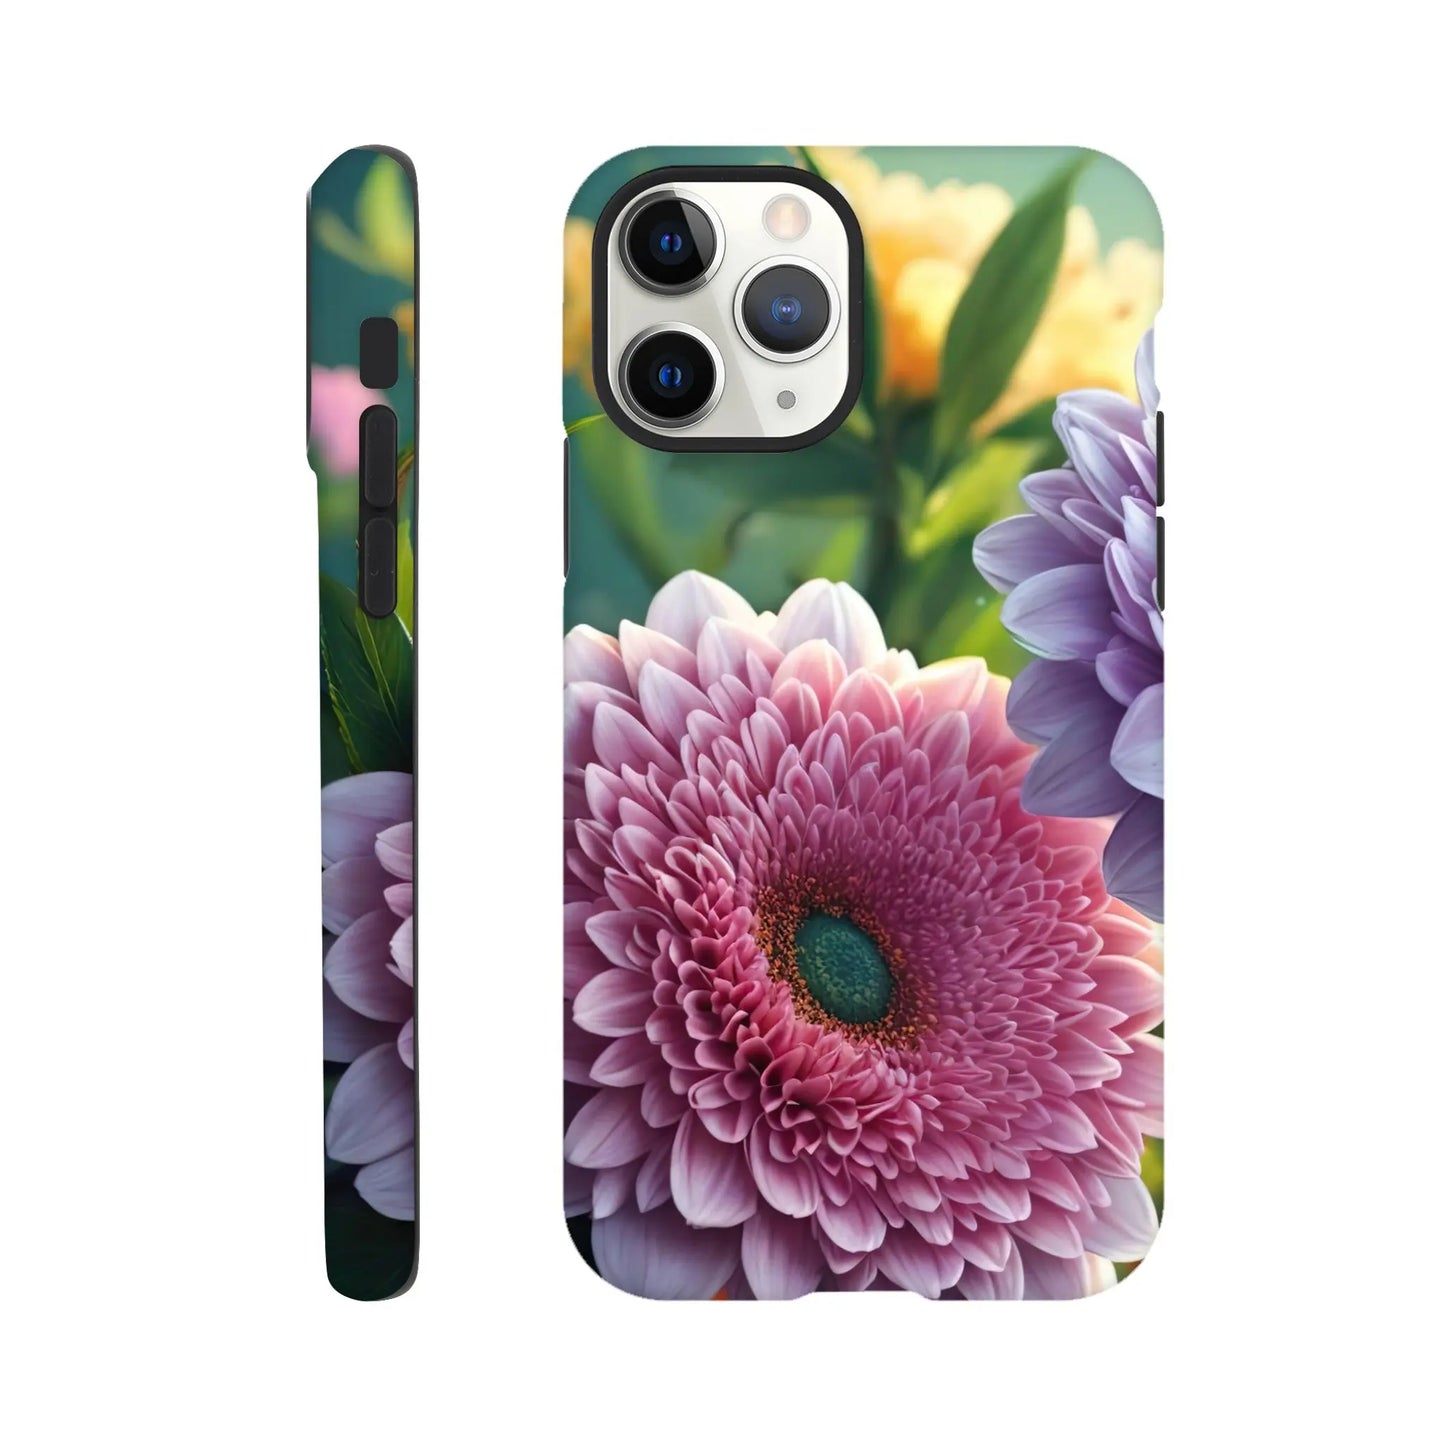 Smartphone-Hülle "Hart" - Blumen Vielfalt - Foto Stil, KI-Kunst, Pflanzen, iPhone-11-Pro - RolConArt